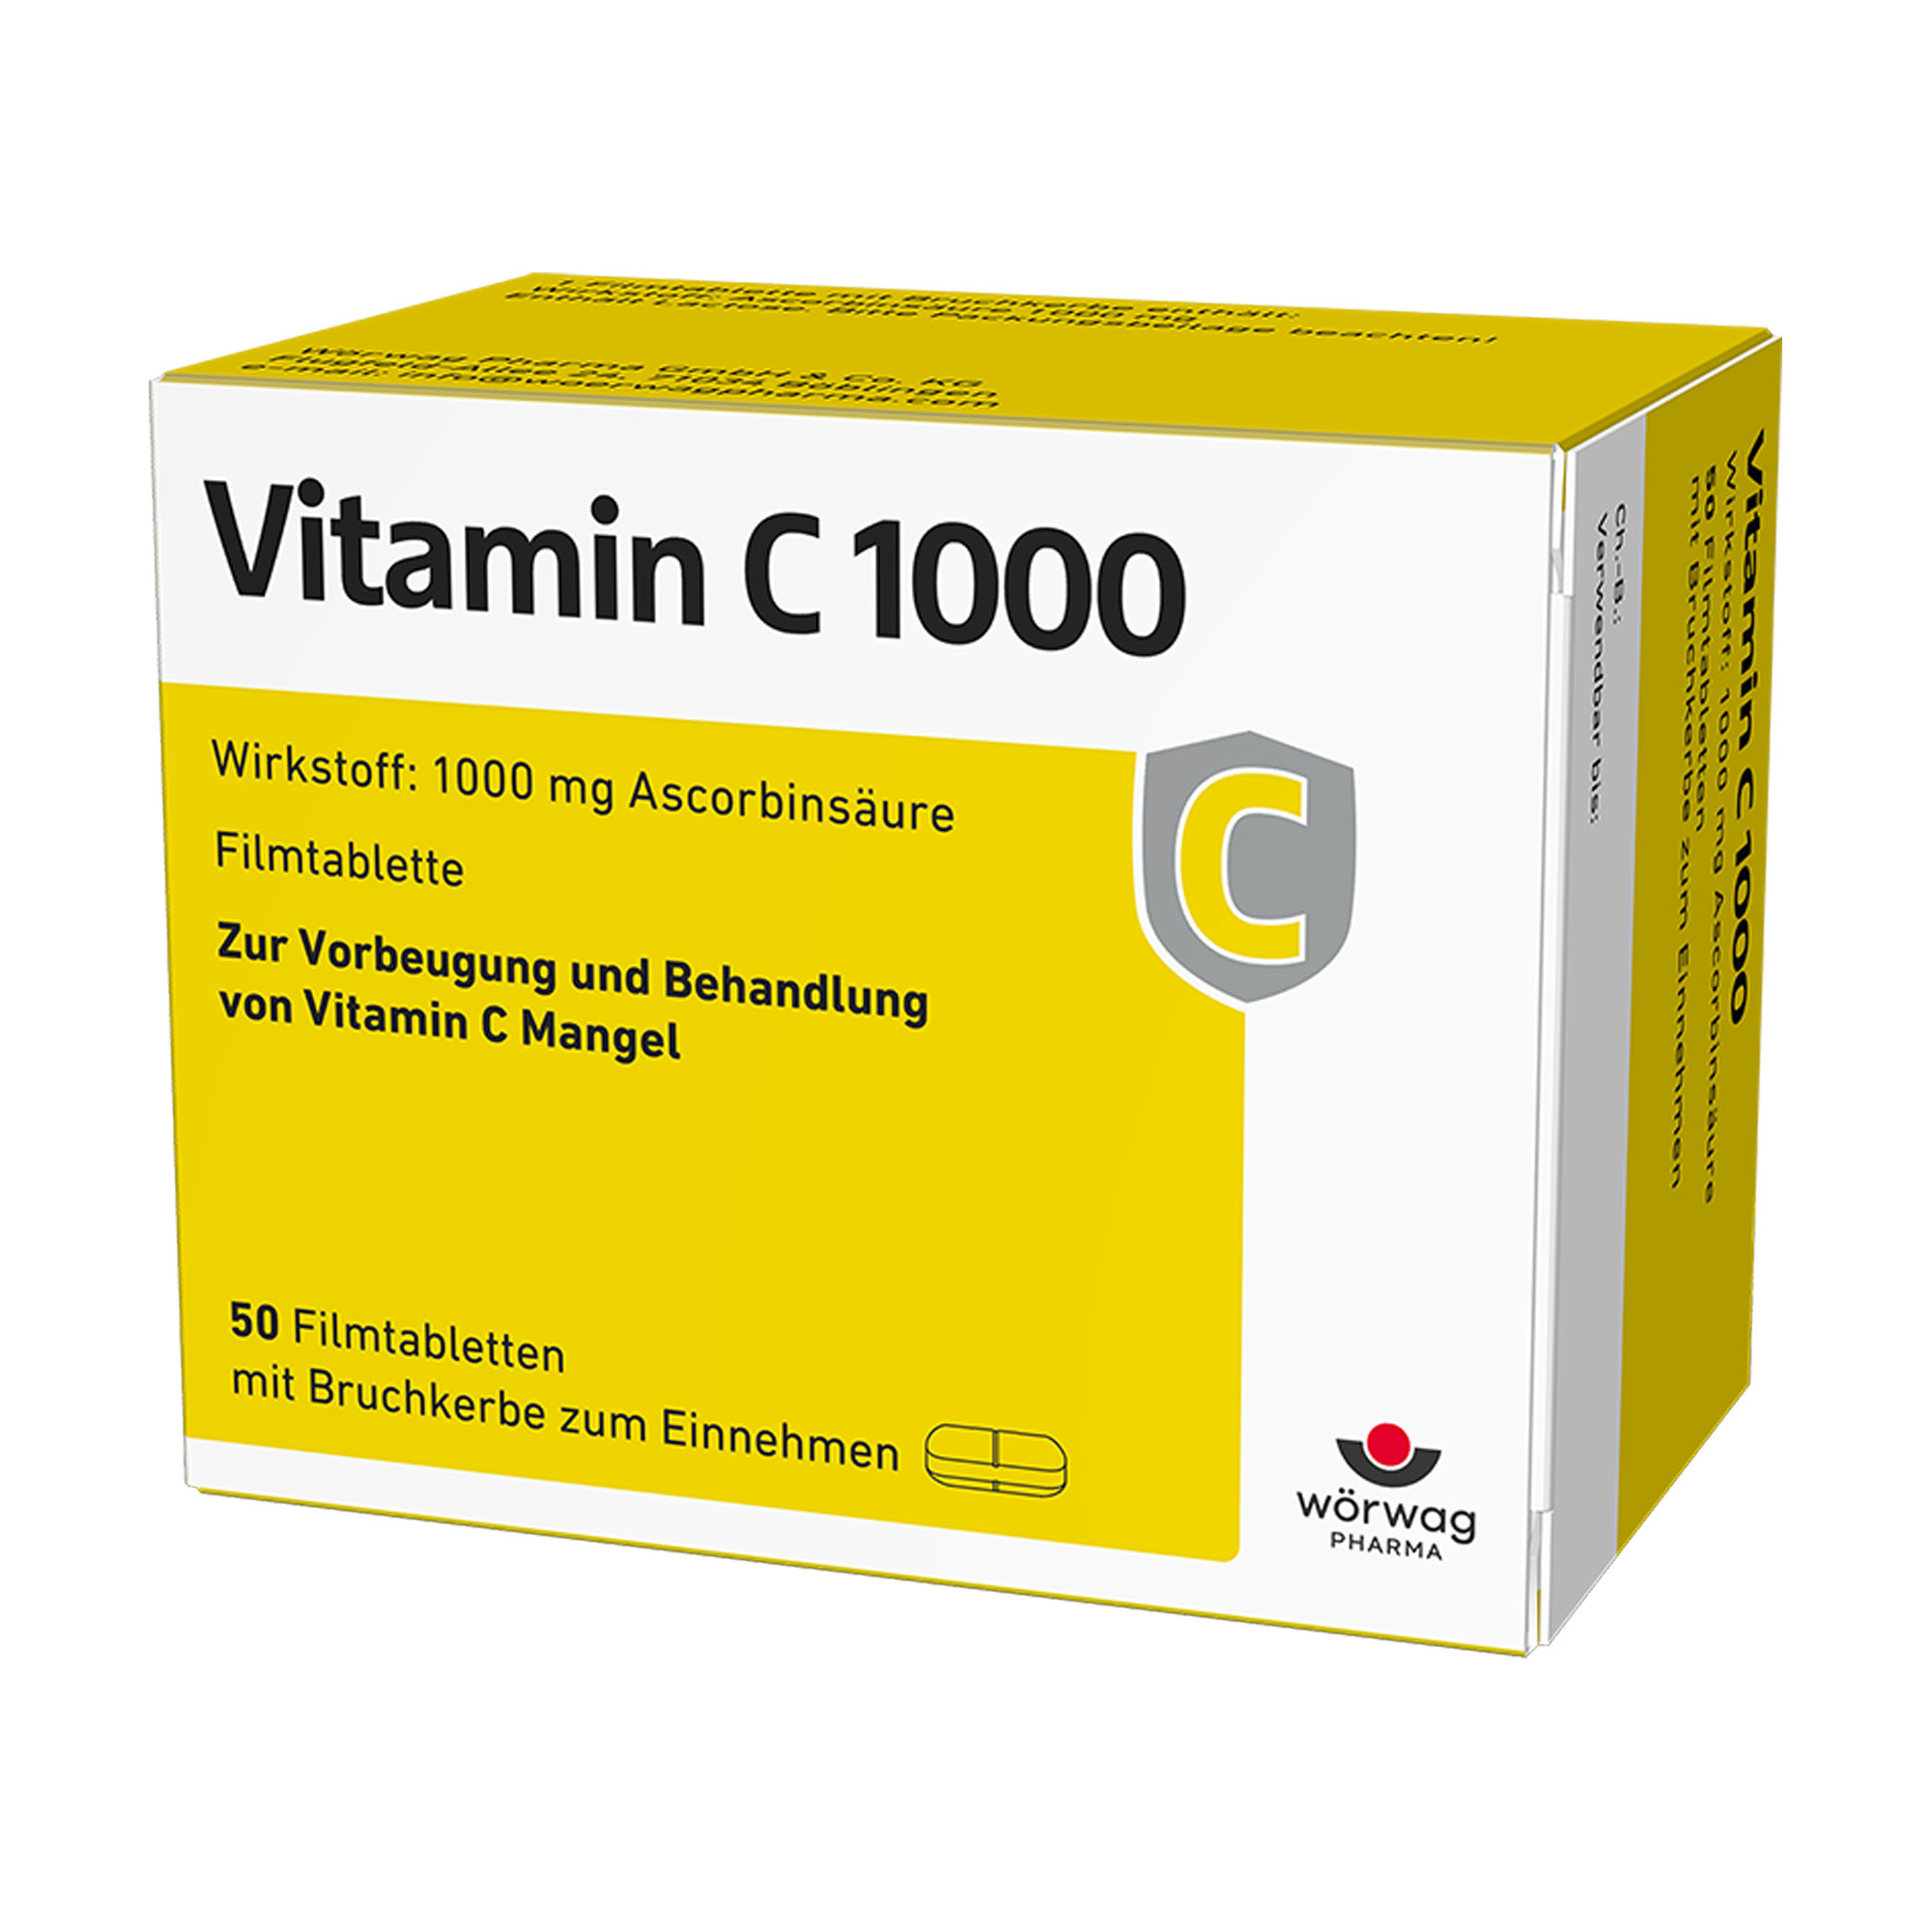 Vitamin-C-Präparat zur Vorbeugung eines Vitamin-C-Mangels und zur Behandlung von Vitamin-C-Mangel-Krankheiten.